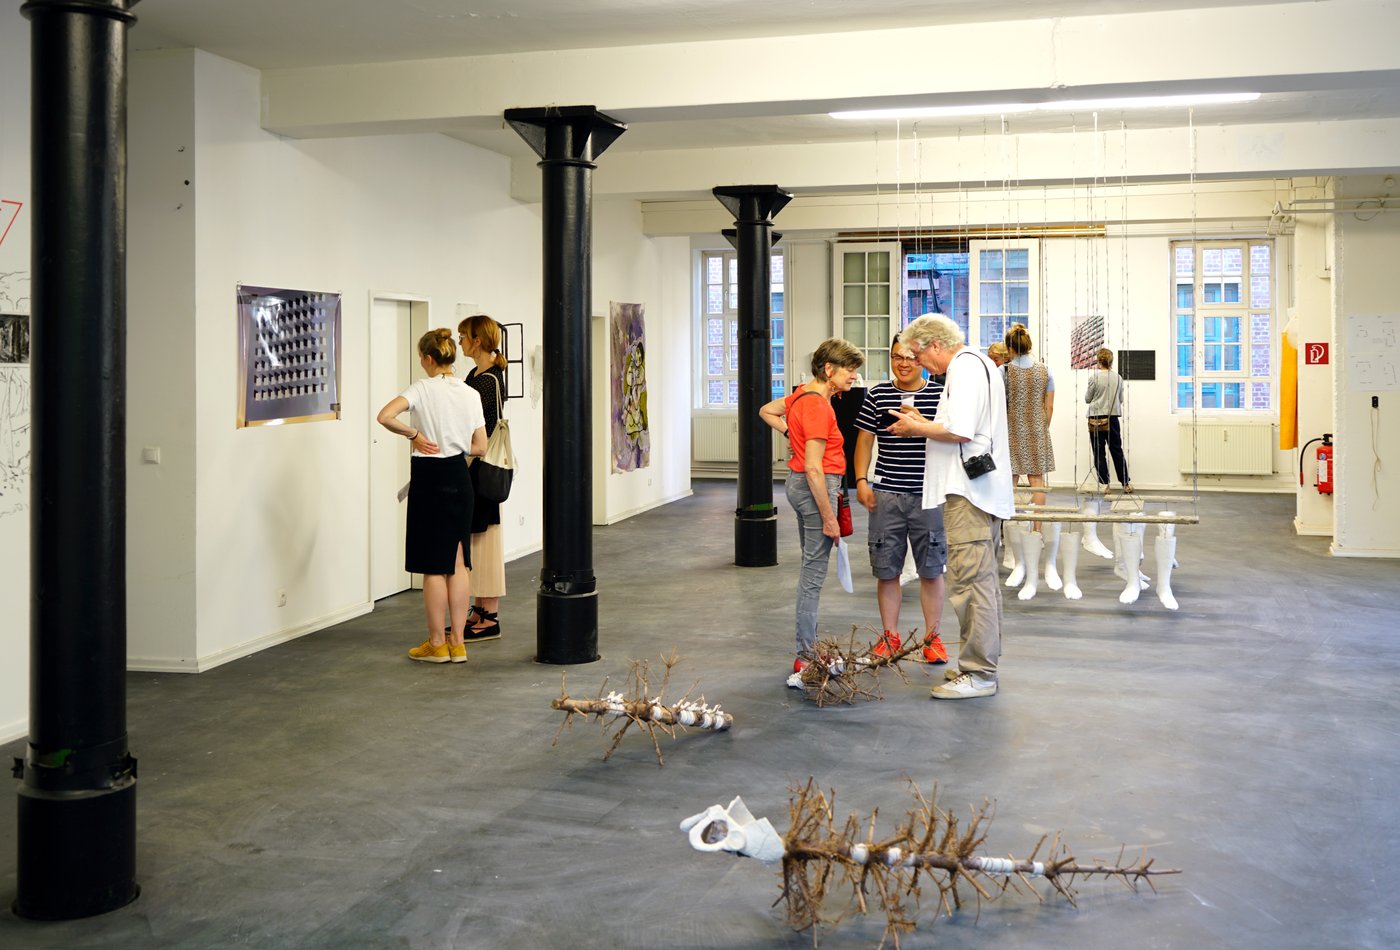 Exhibition Space with PersonsAusstellungsraum mit Personen